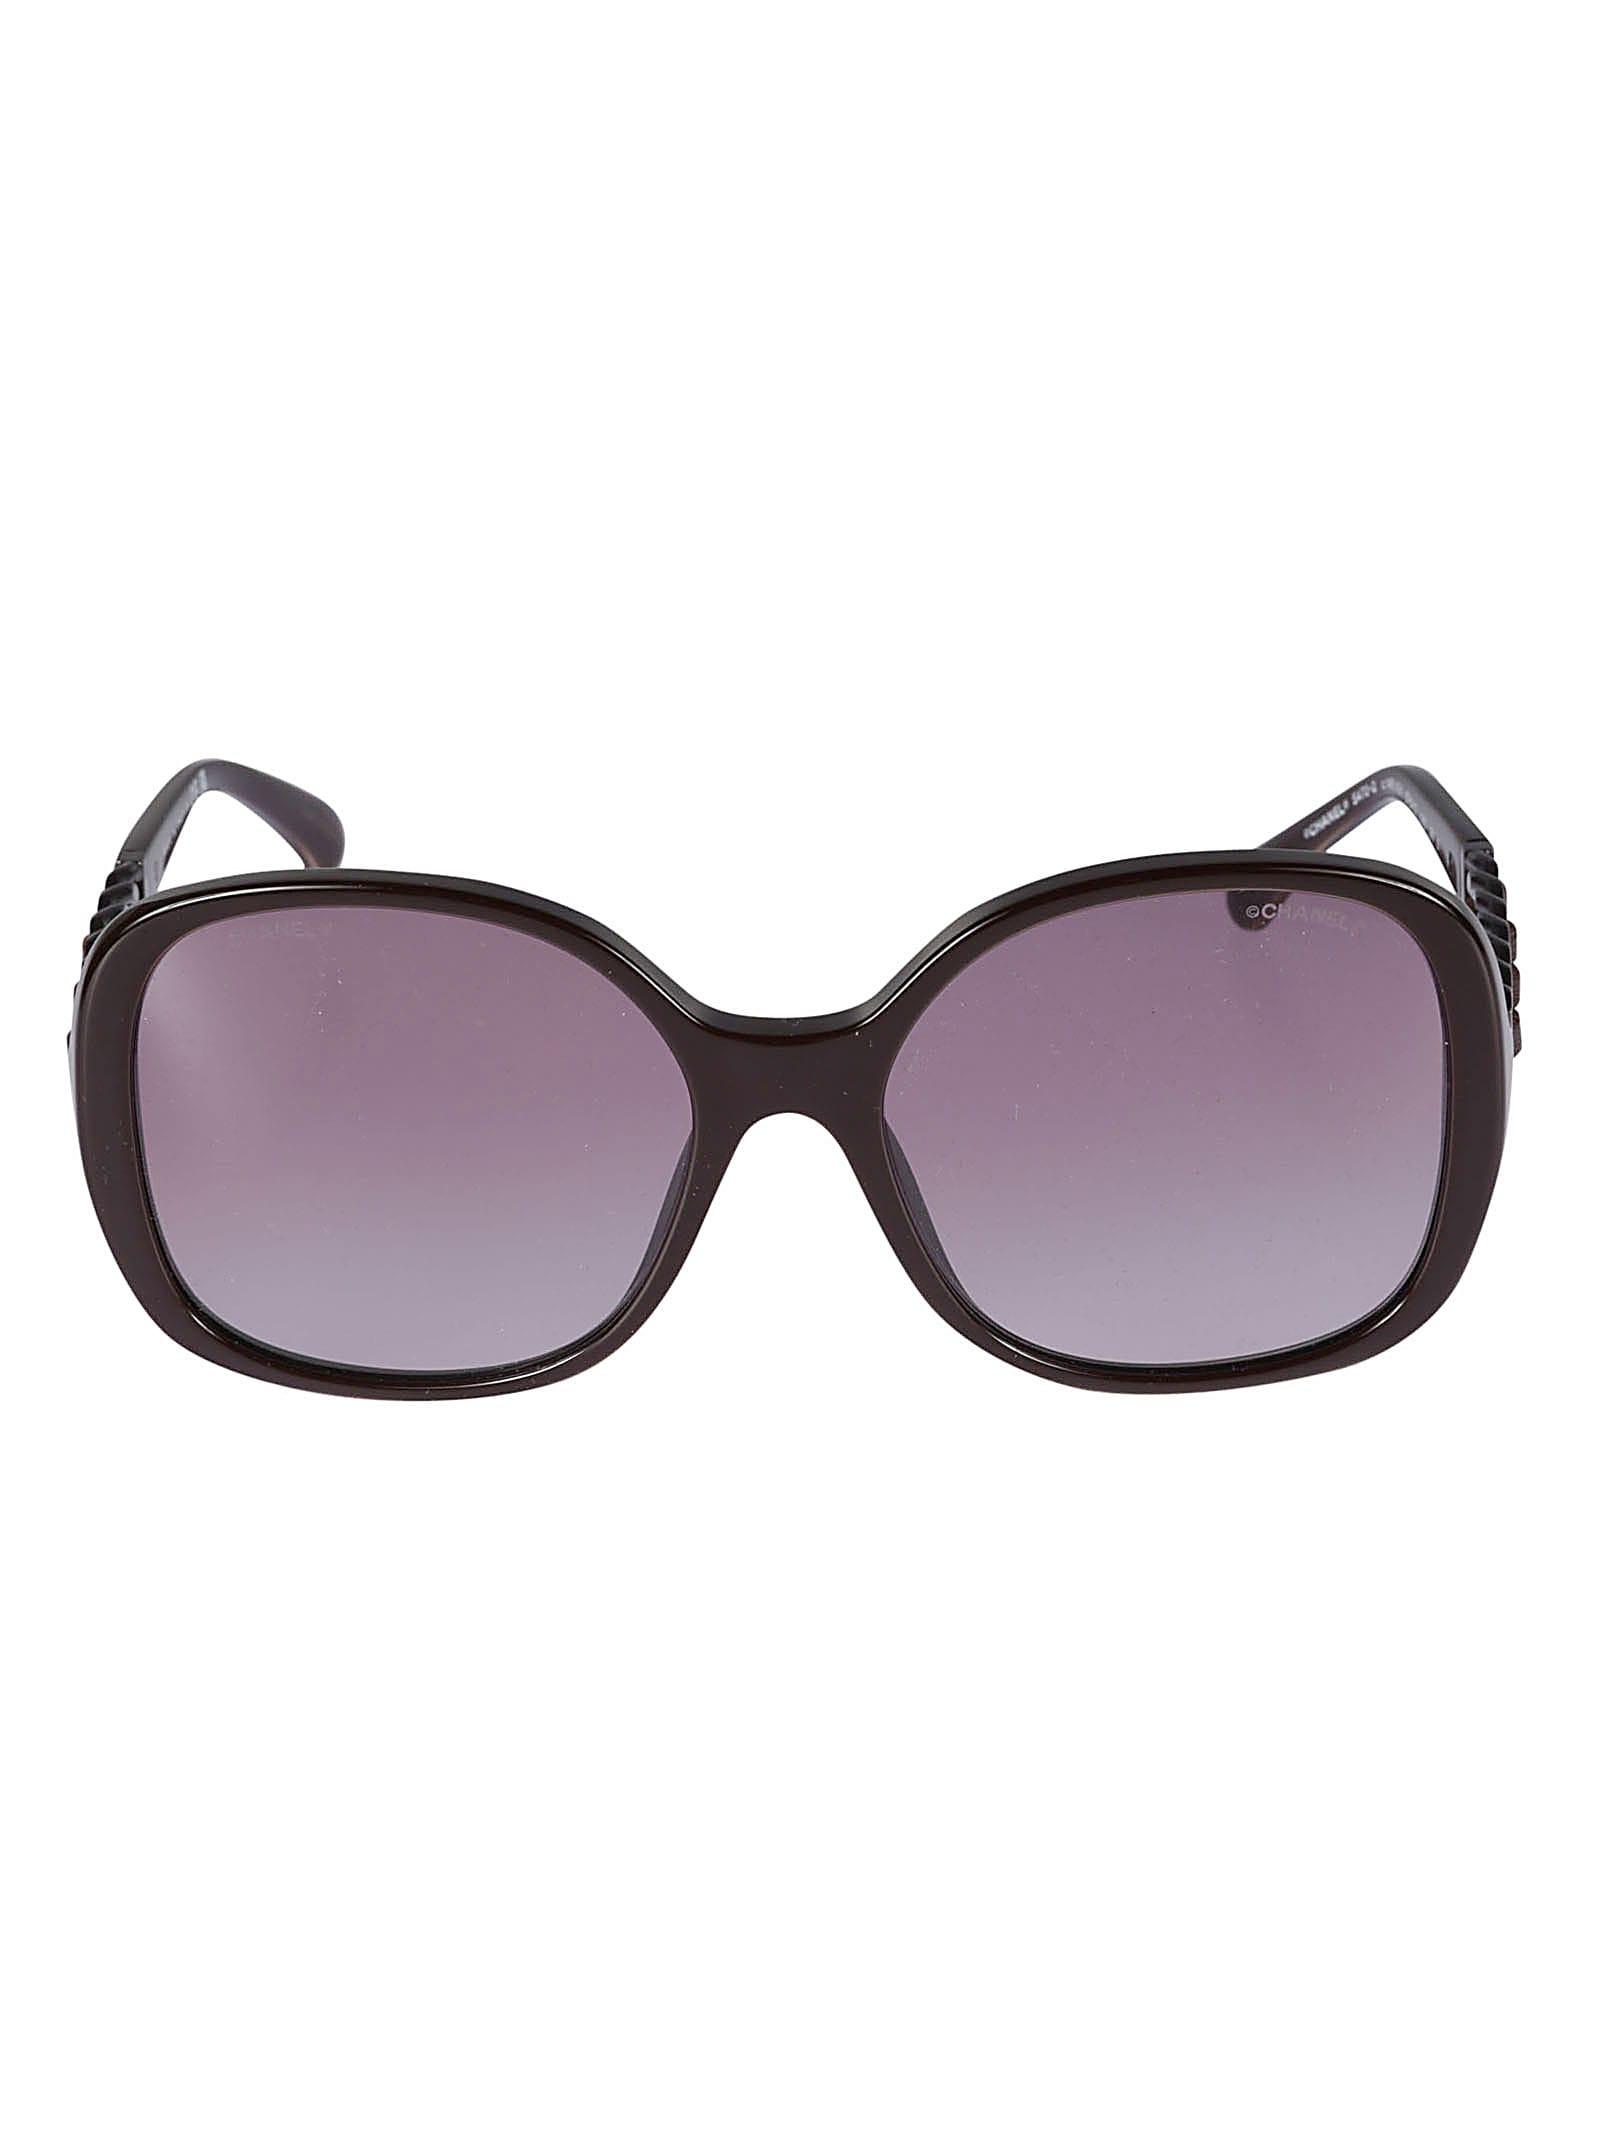 chanel square sunglasses women